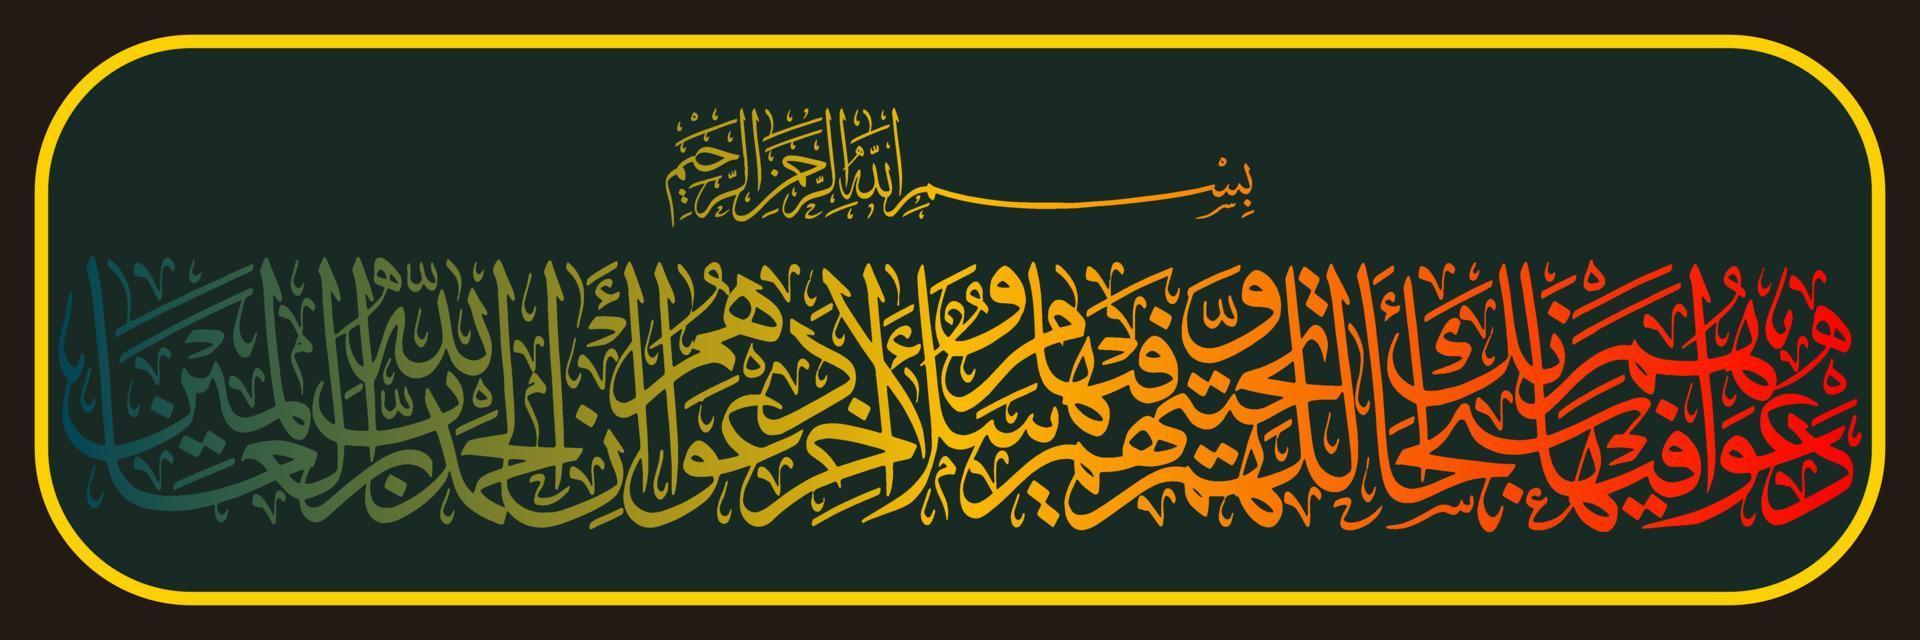 caligrafia árabe, alcorão surata no versículo 10 de yunus, traduziu sua oração nele é, abençoado seja você, ó nosso senhor, e sua saudação é, a paz esteja com você. e o encerramento de sua oração é, vetor